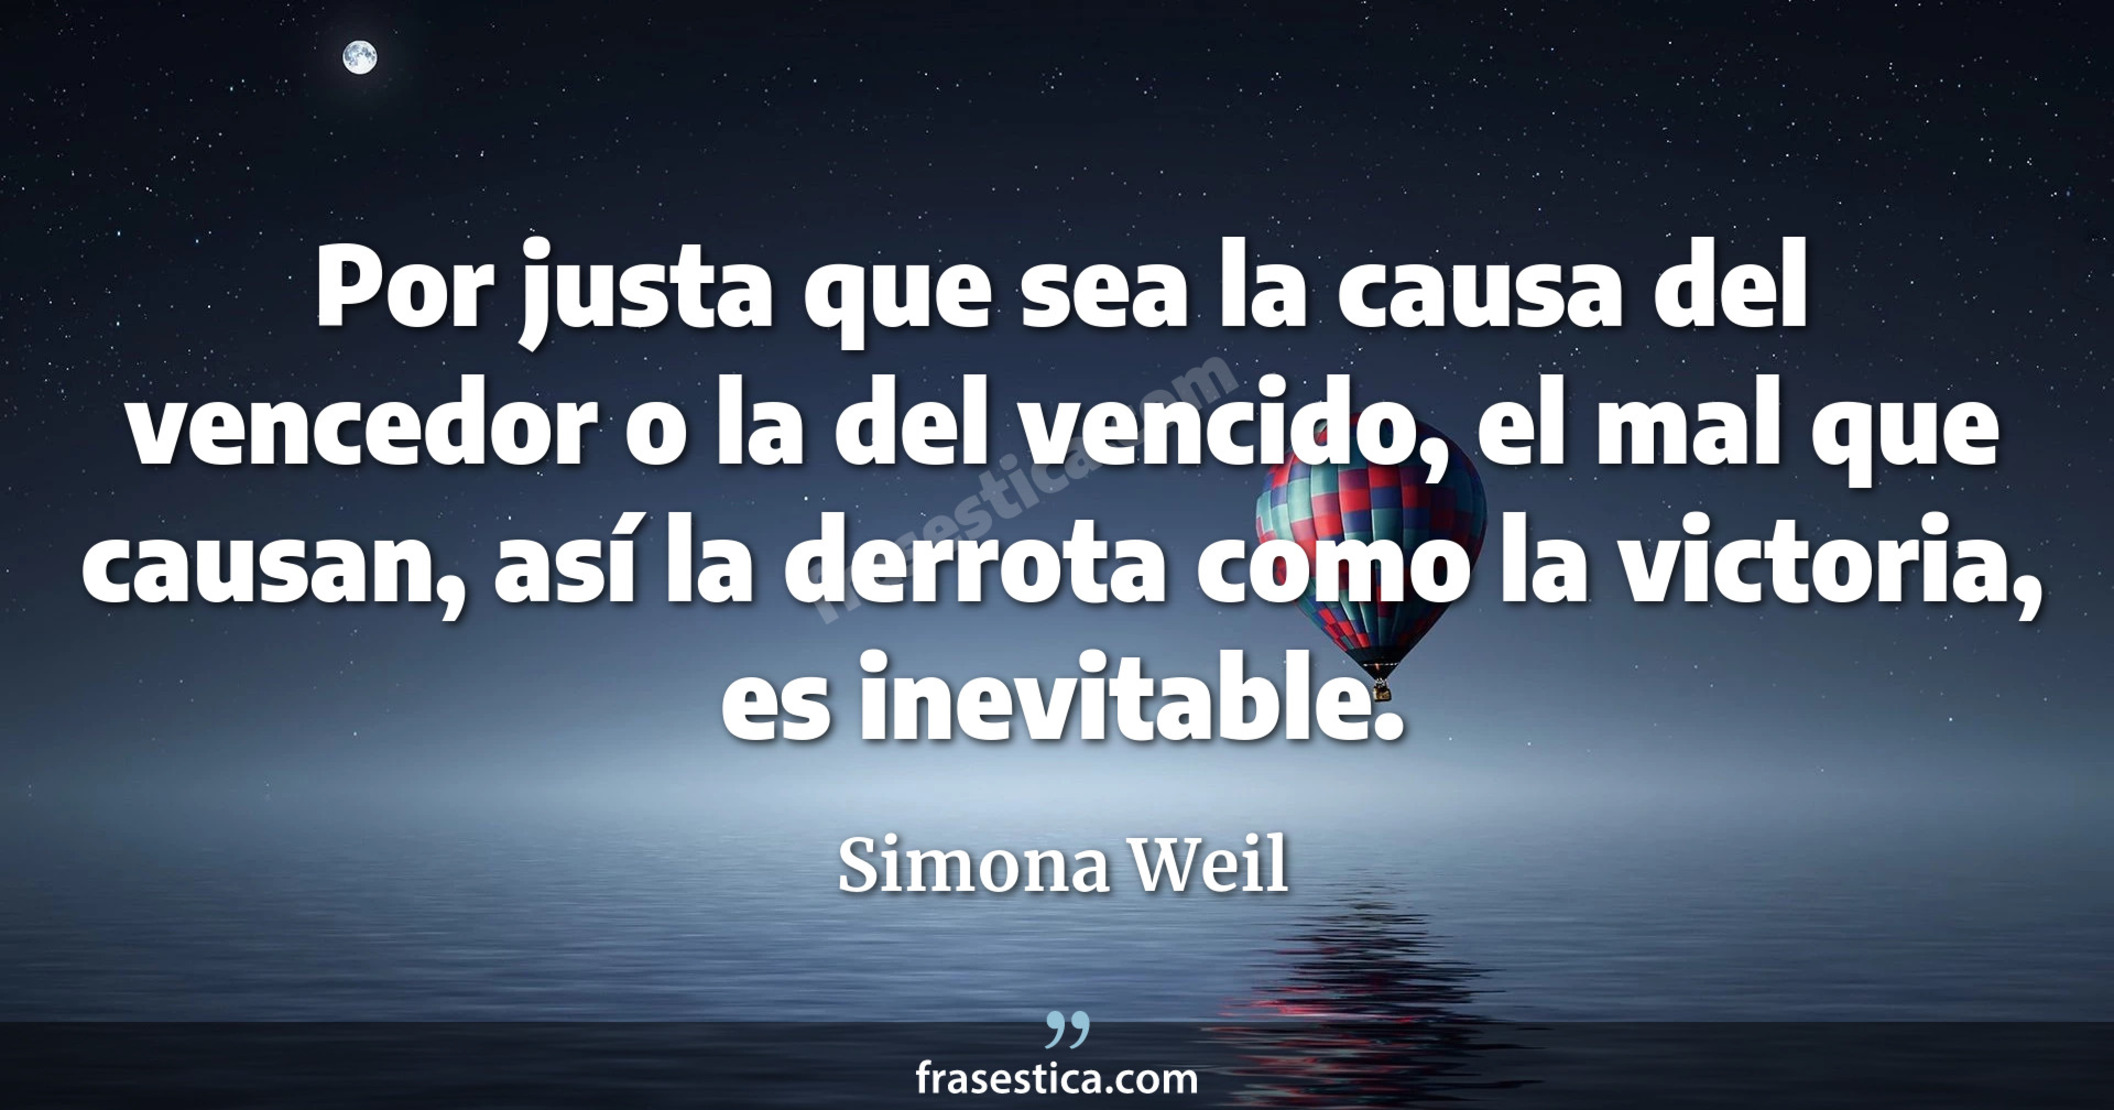 Por justa que sea la causa del vencedor o la del vencido, el mal que causan, así la derrota como la victoria, es inevitable. - Simona Weil